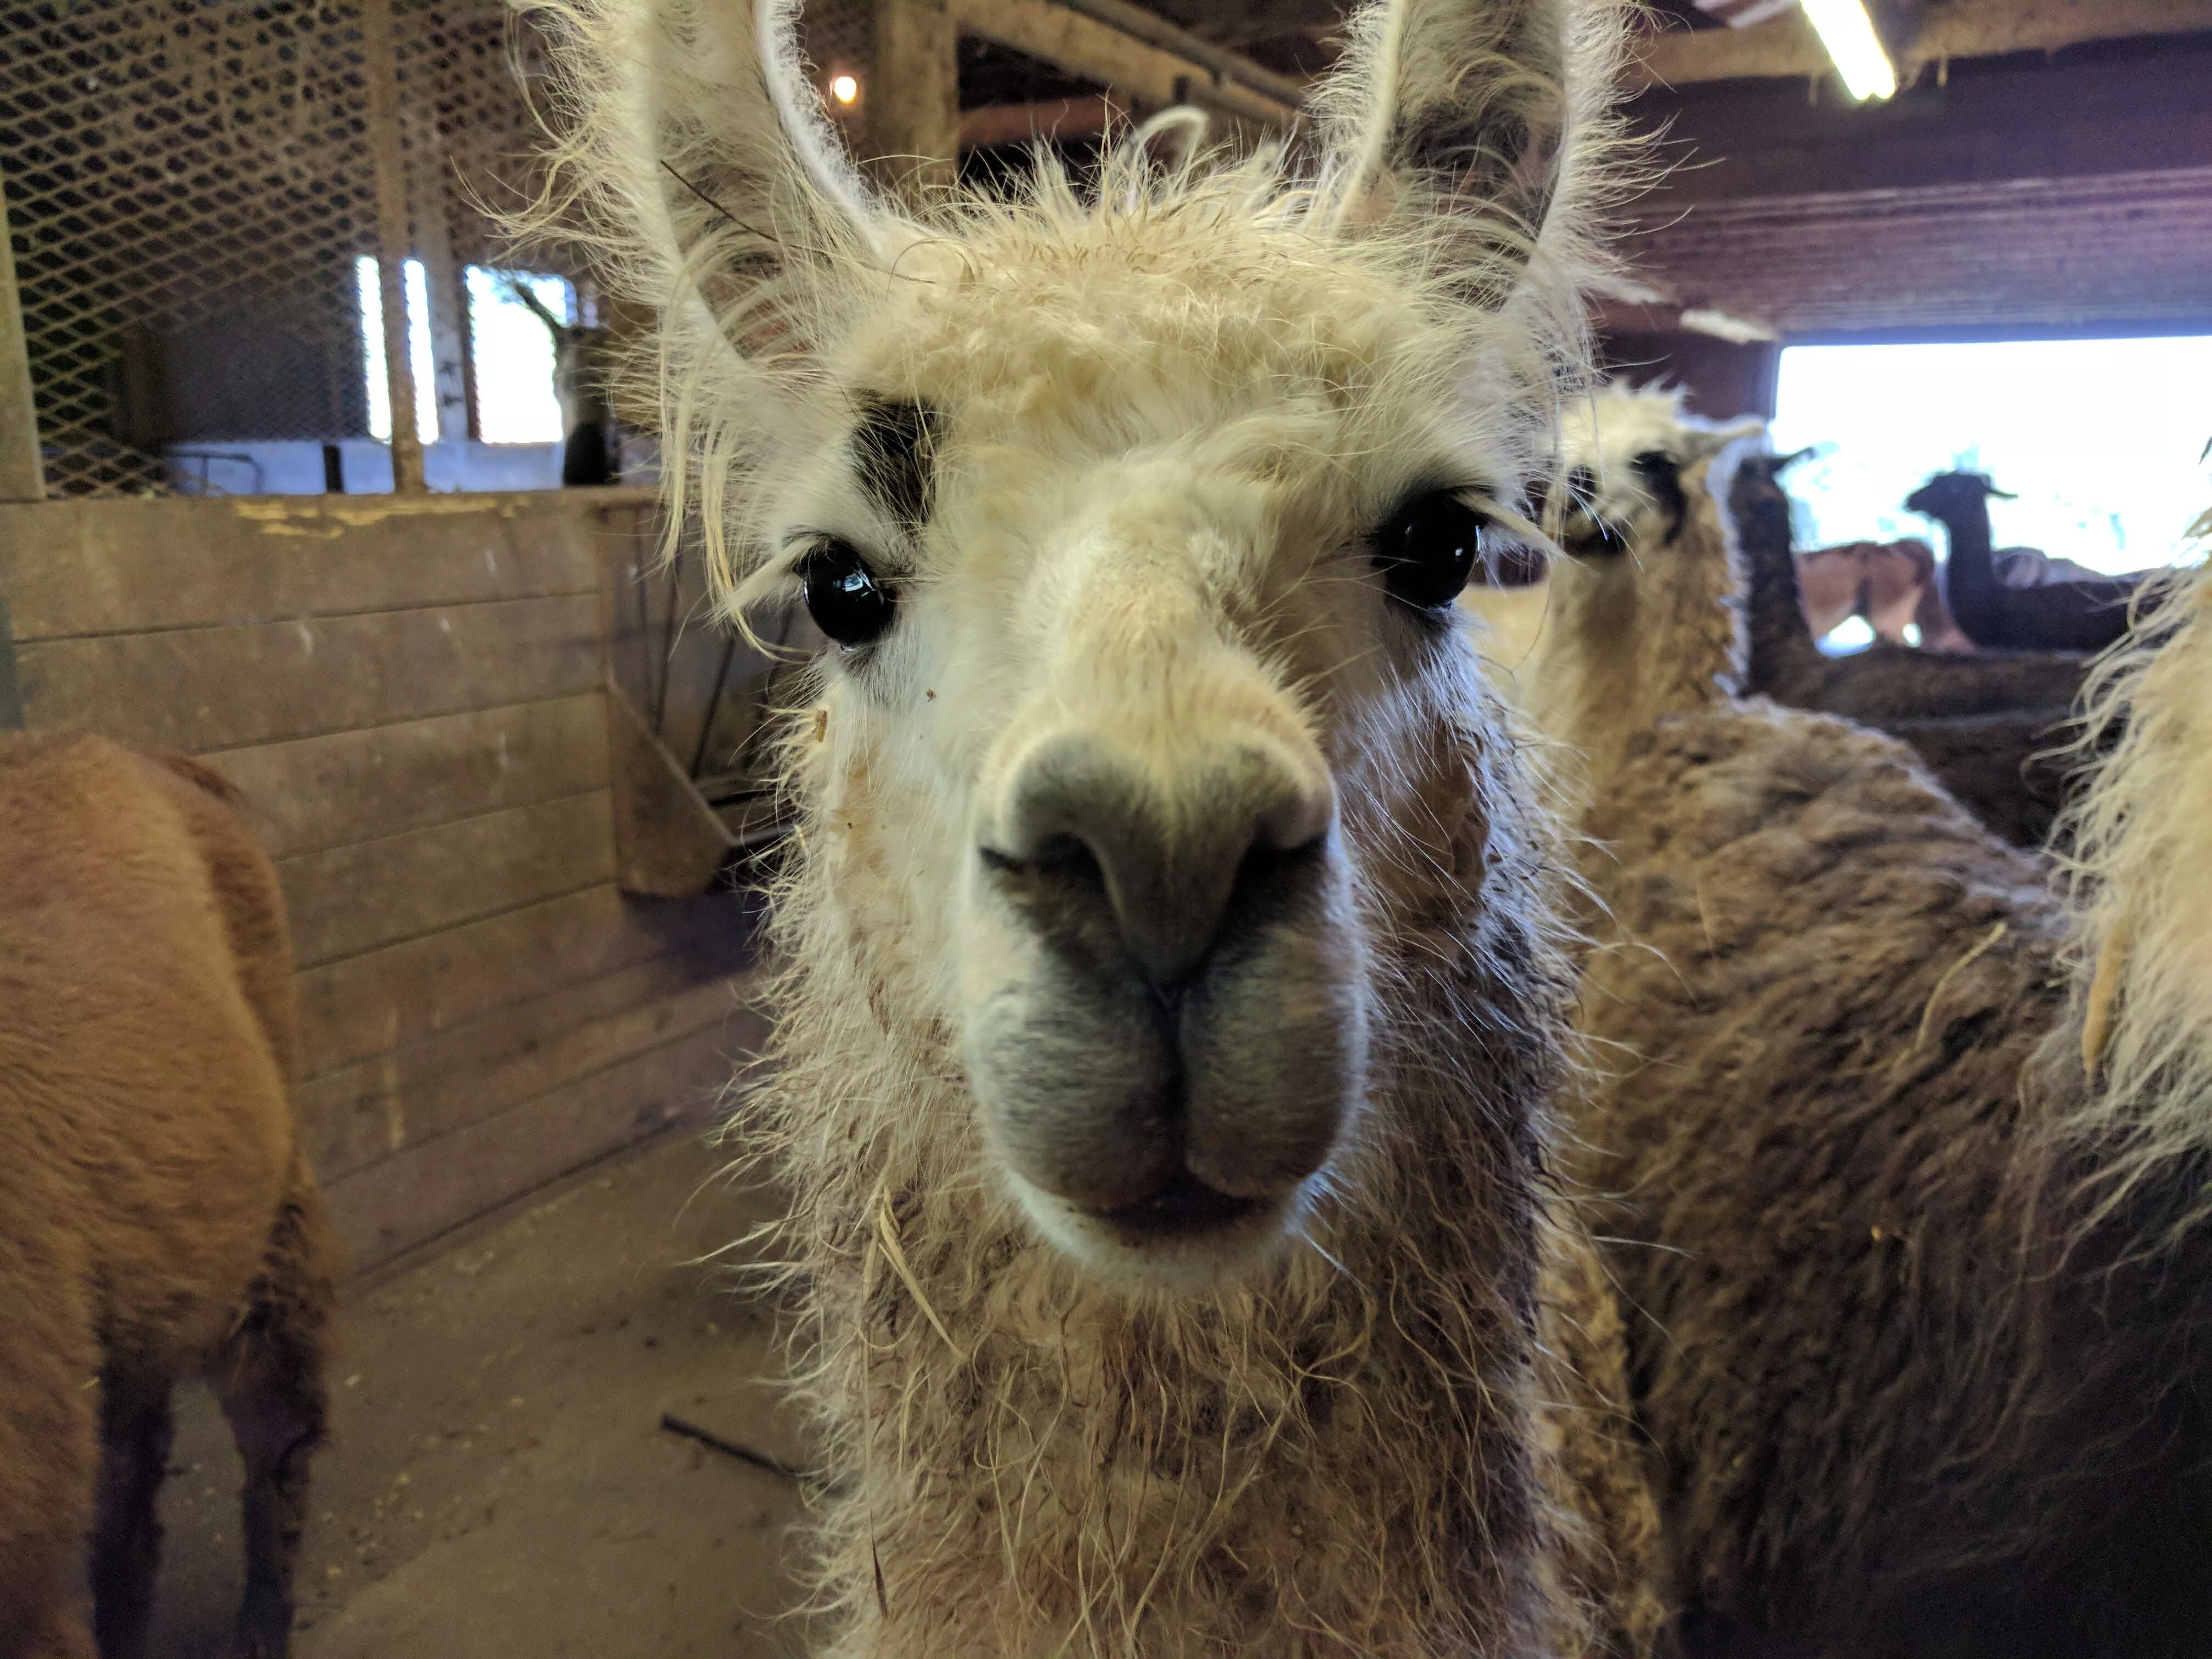 A photo of a llama named Hushabye staring at the camera